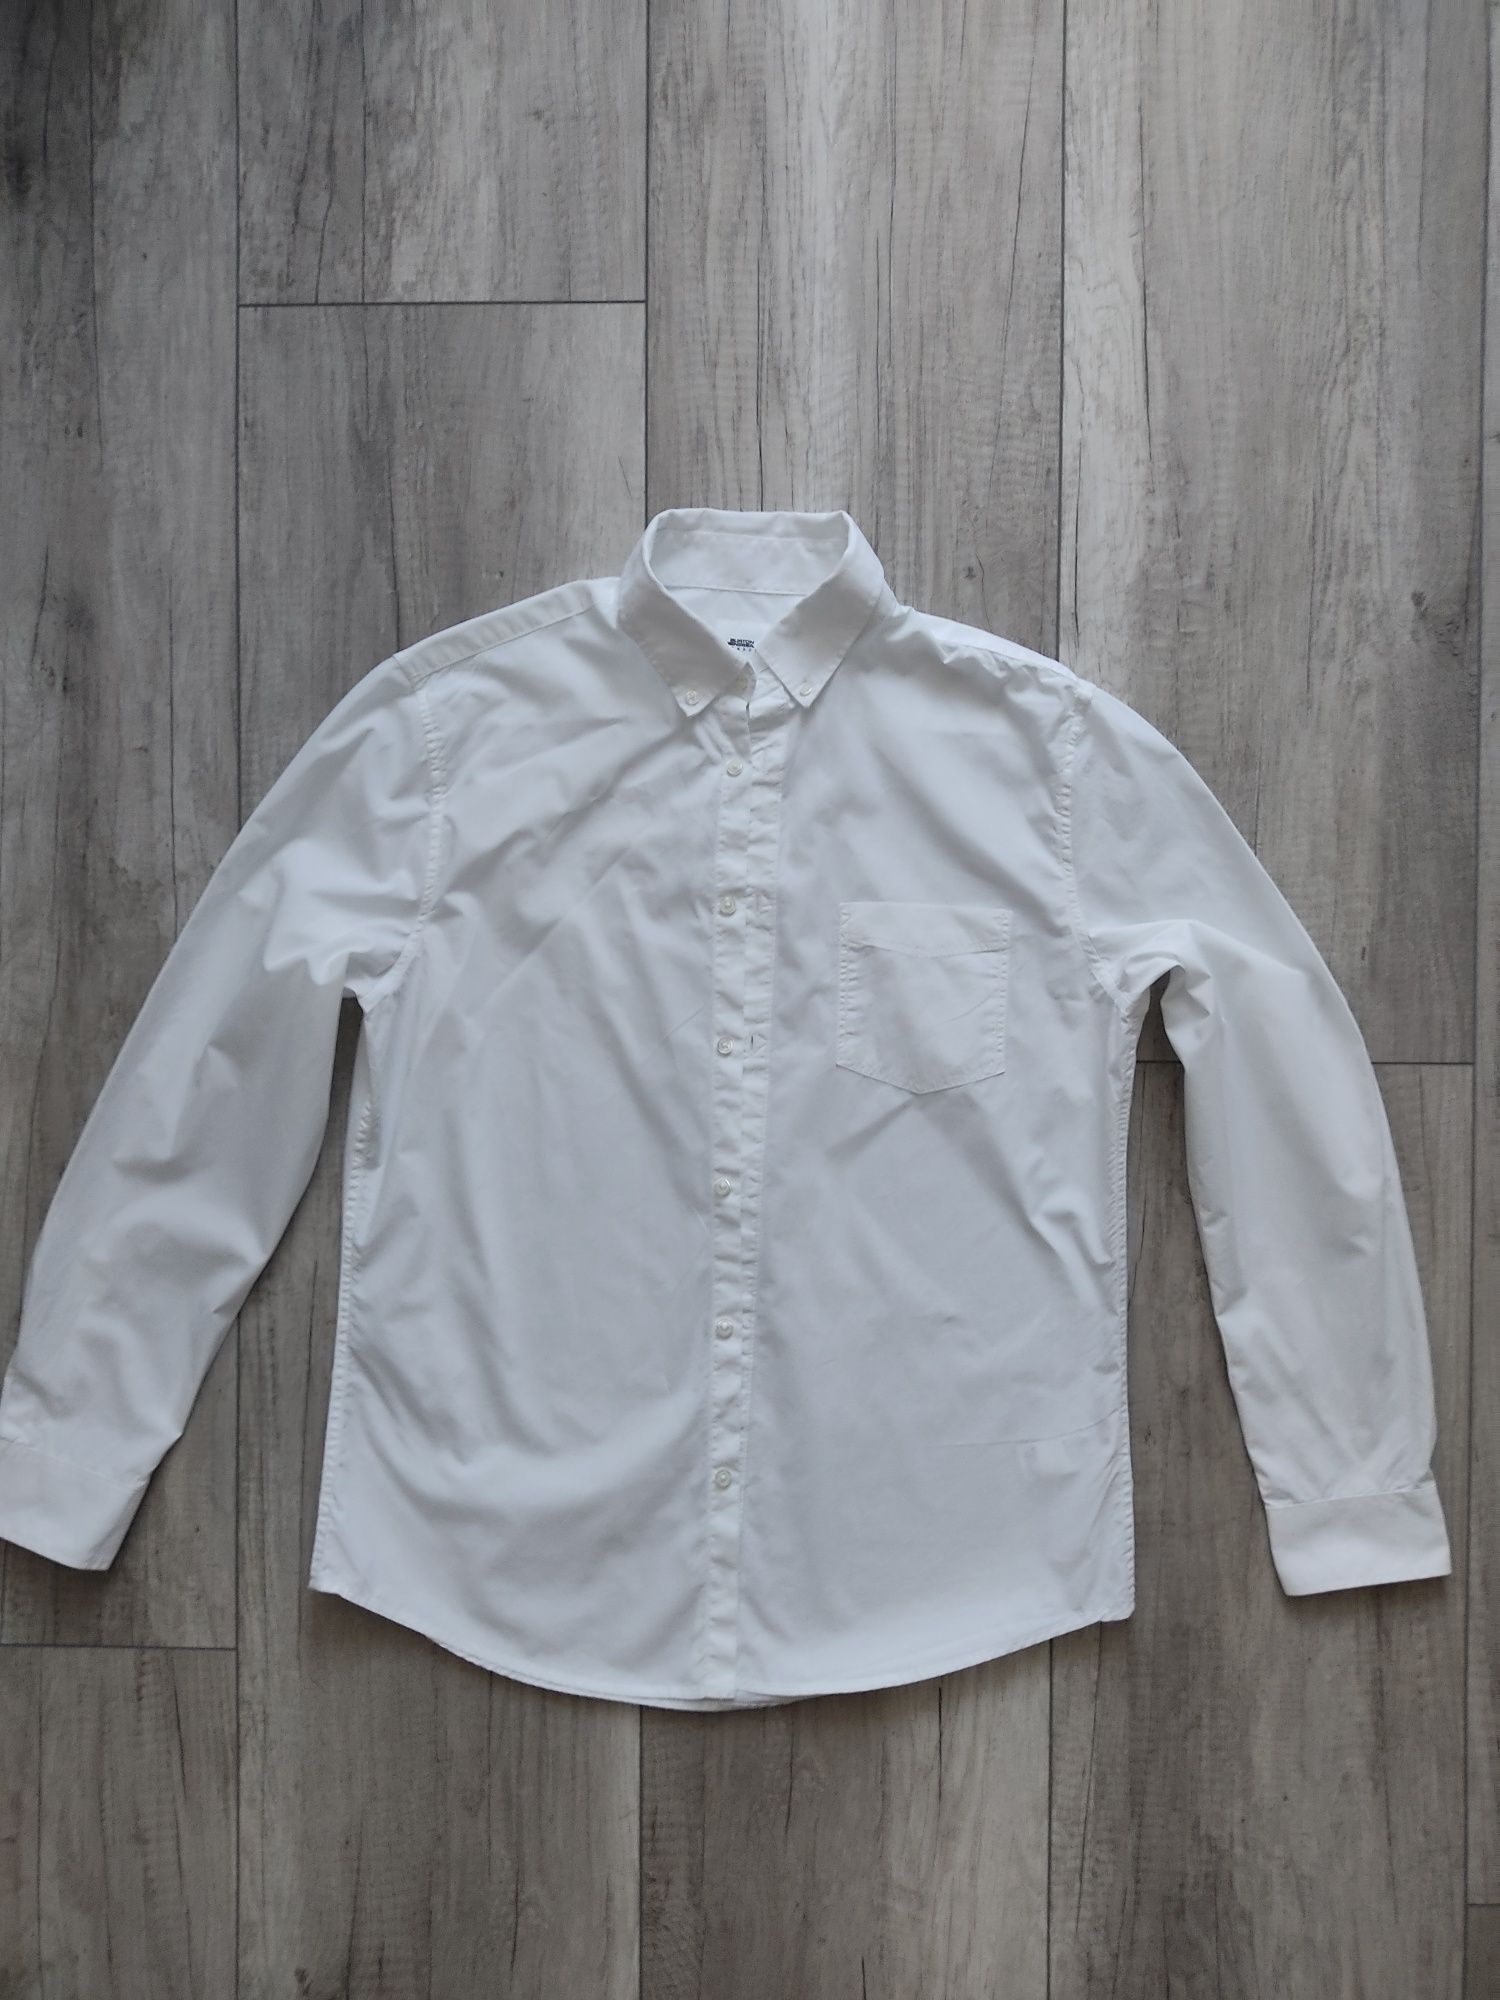 Koszula biała długi rękaw Burton Menswear London L